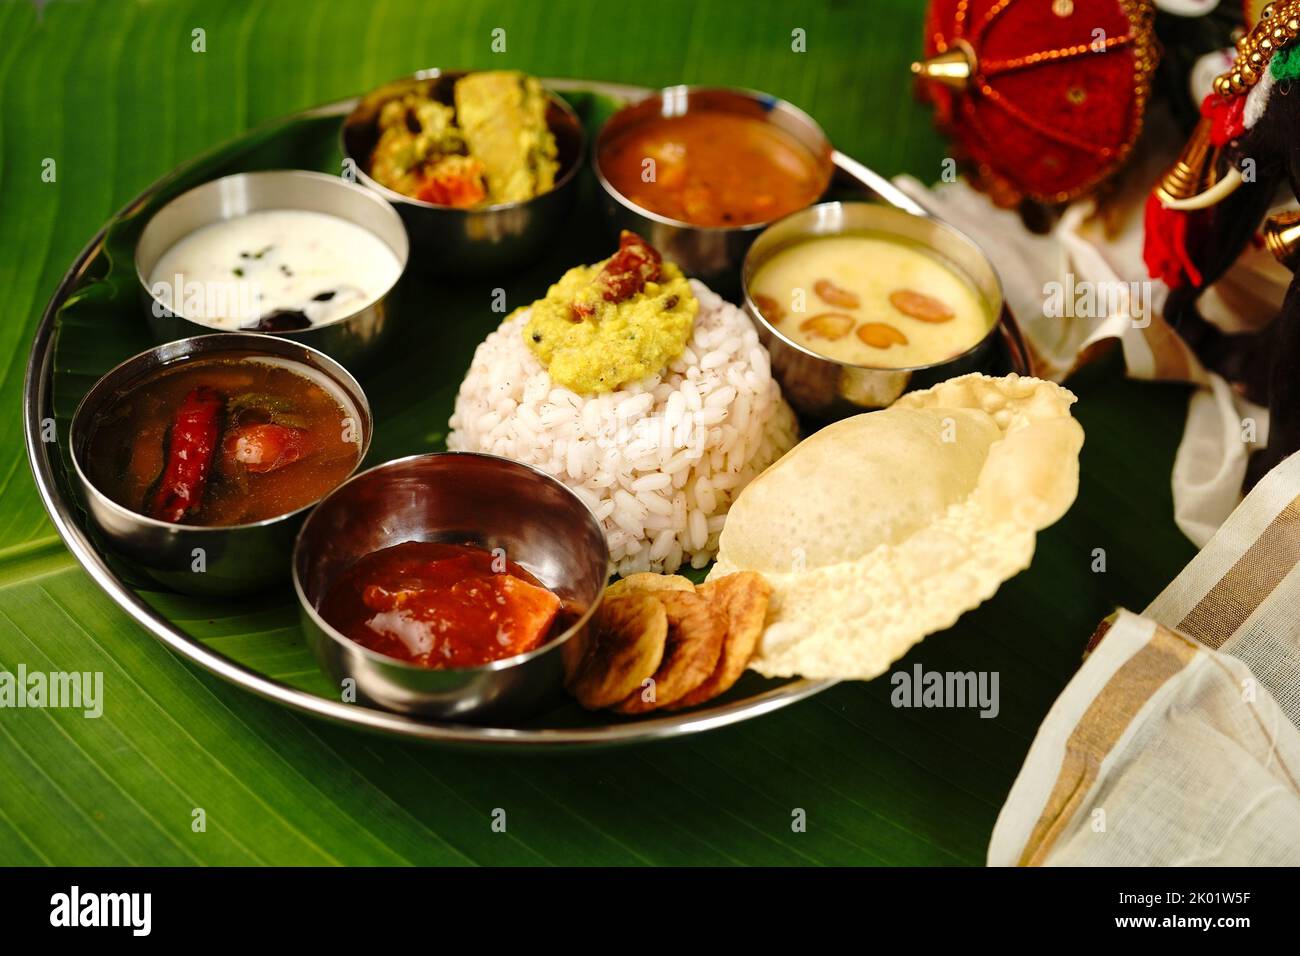 Kerala Ona sadya Onam Feast - vegetarisches Thali auf einem runden Teller mit Bananenblatt serviert Stockfoto